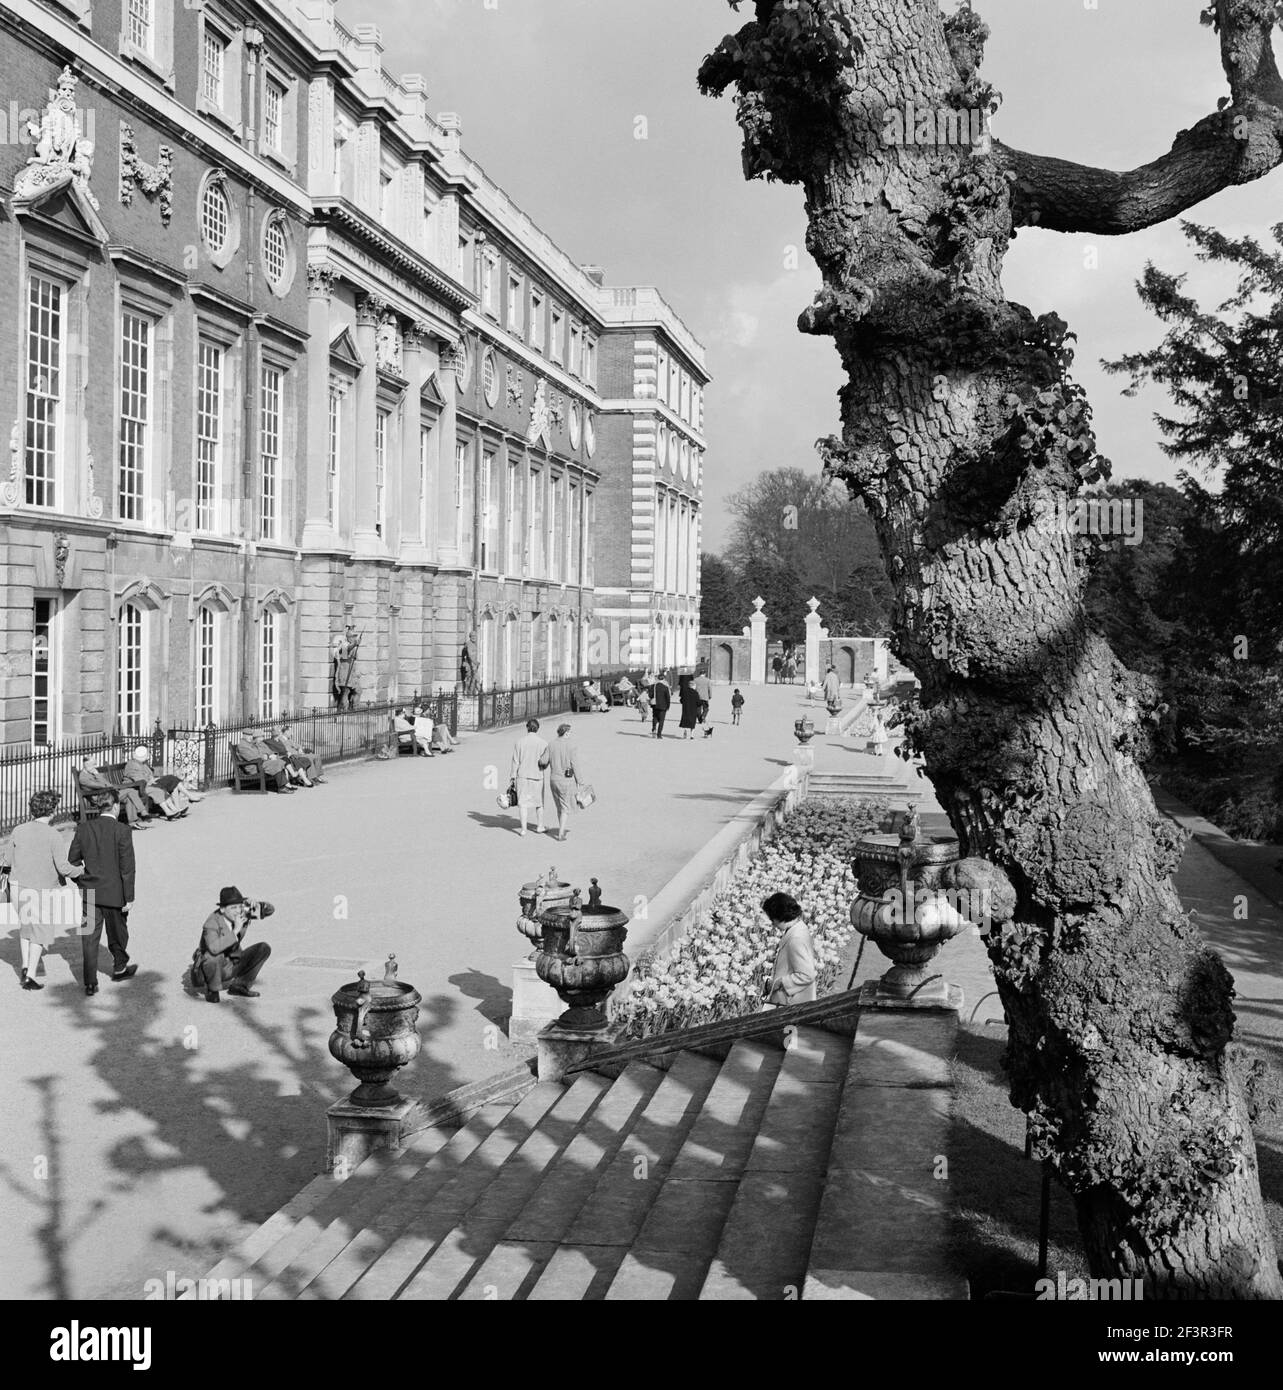 HAMPTON COURT PALACE, Greater London. Le persone che passeggiano fuori dal fronte sud per l'Hampton Court Palace con un uomo accovacciato che scatta una fotografia di un w Foto Stock